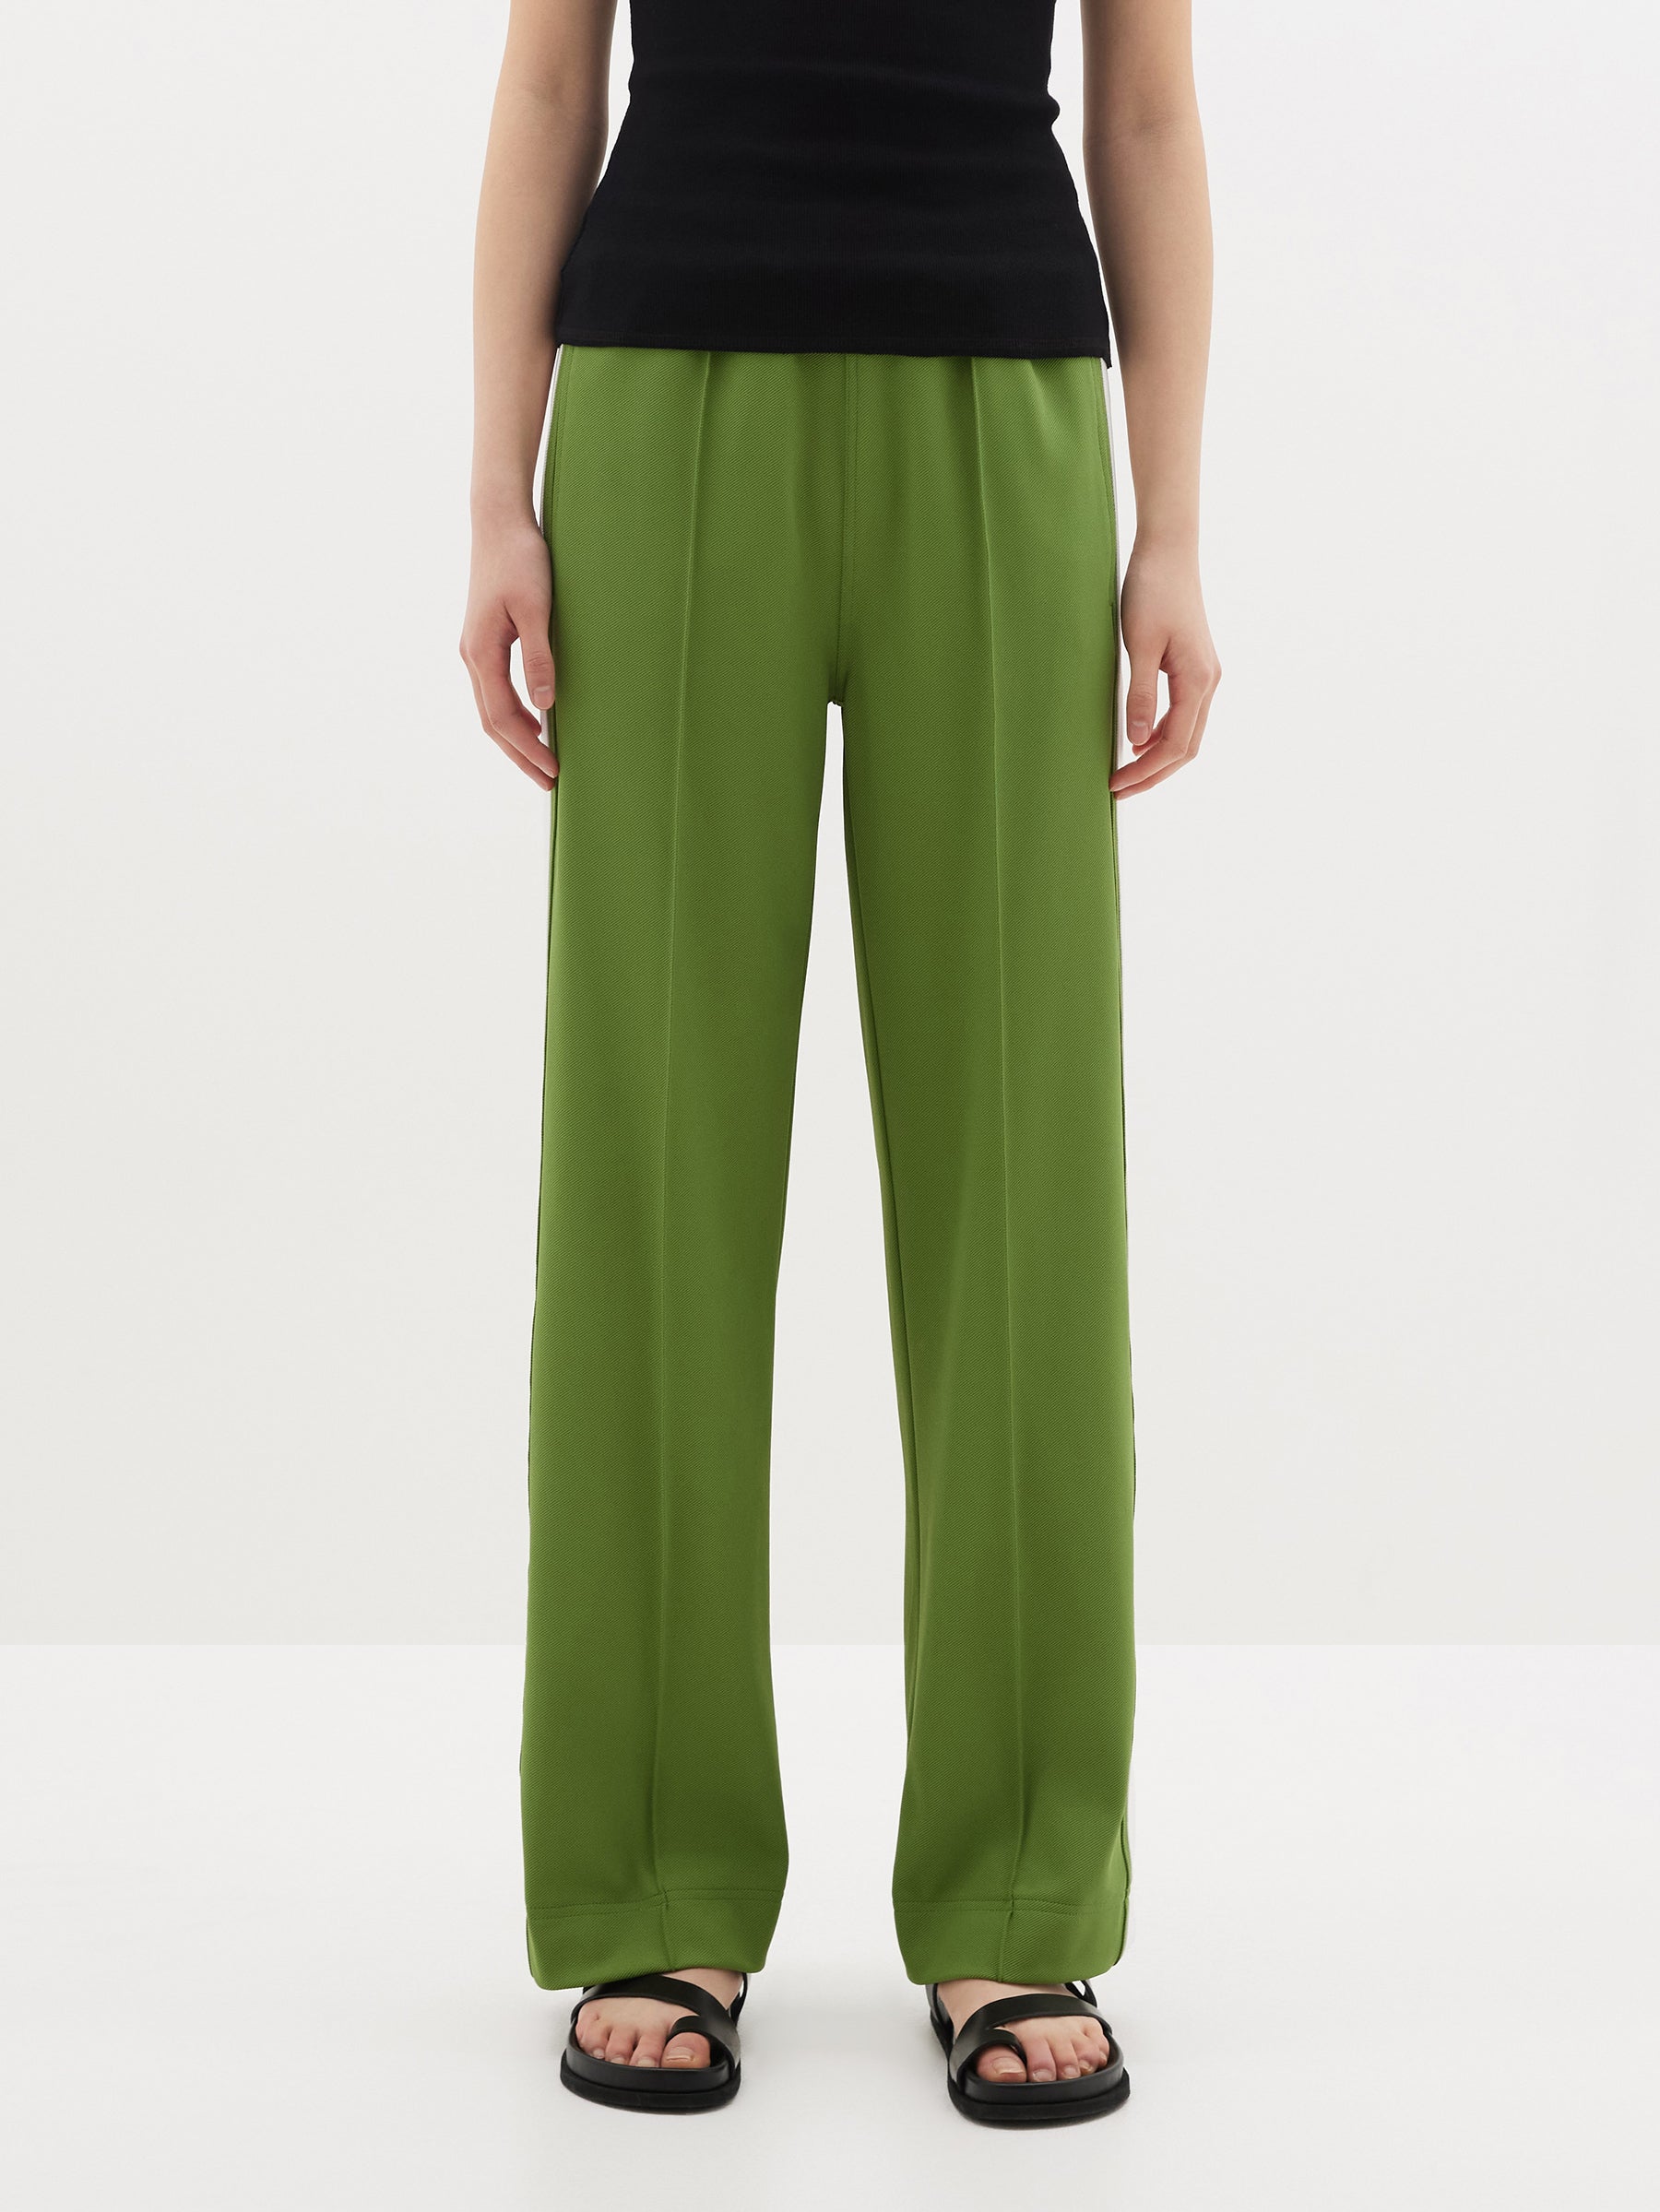 Zara Emerald Green Side Stripe Work Pants